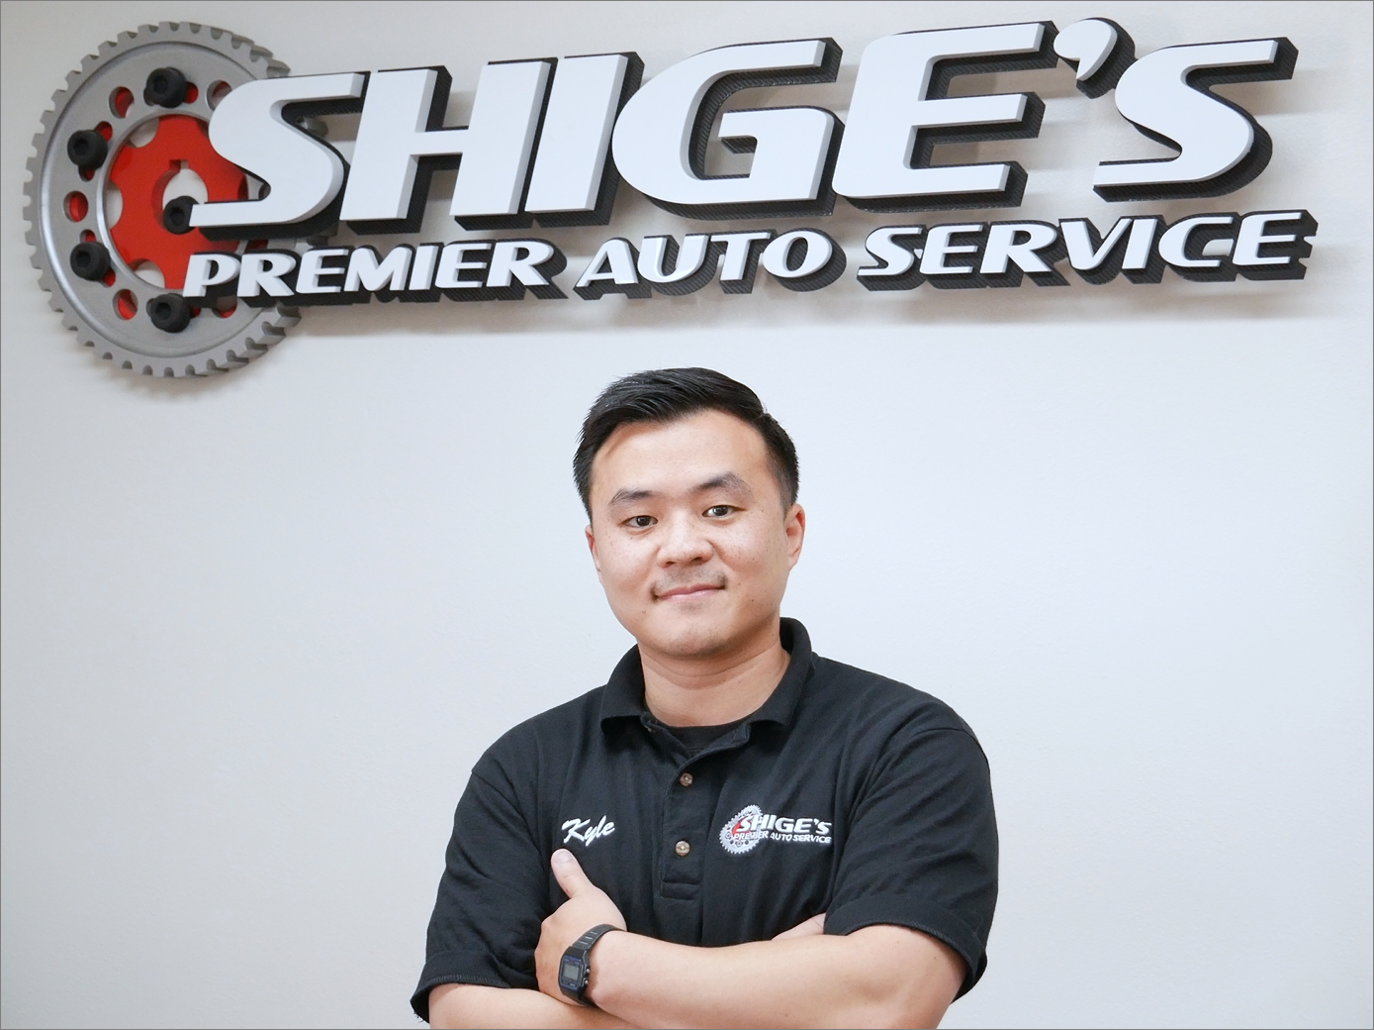 Daniel Arrey | Shige's Premier Auto Service